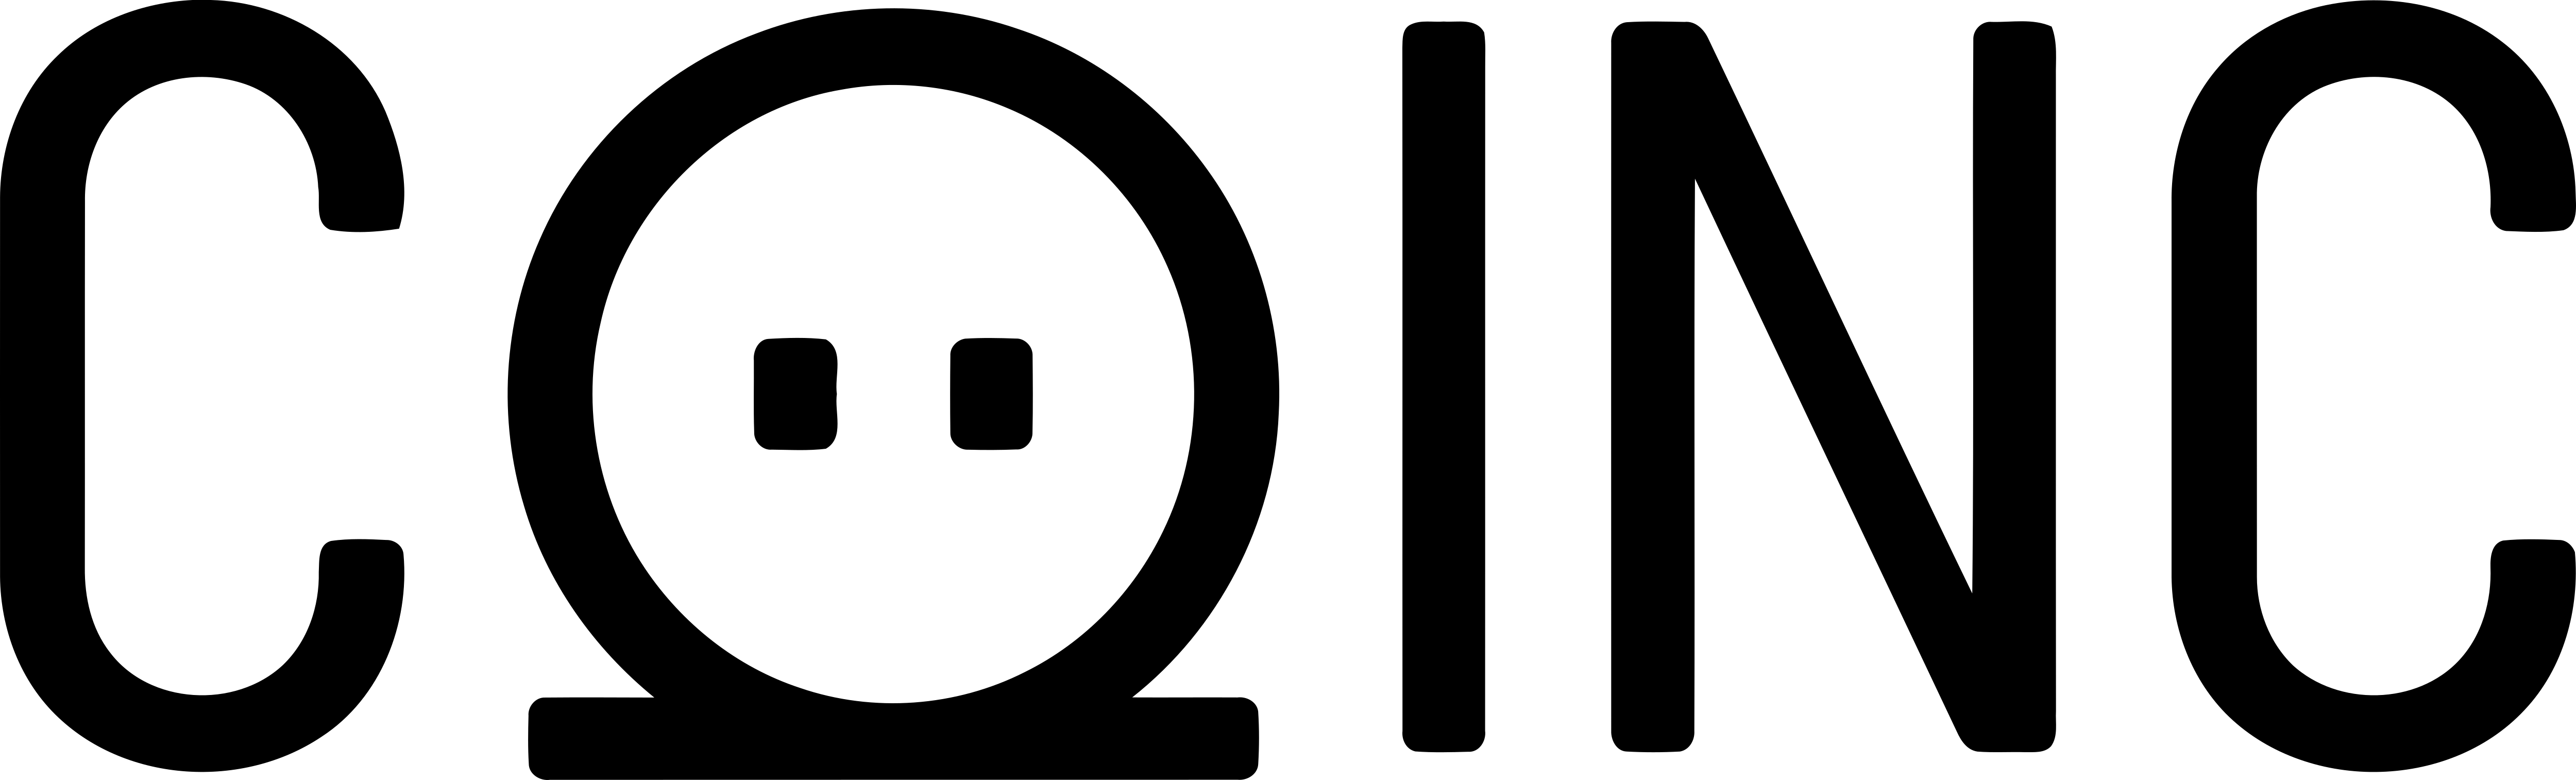 Logo coinc